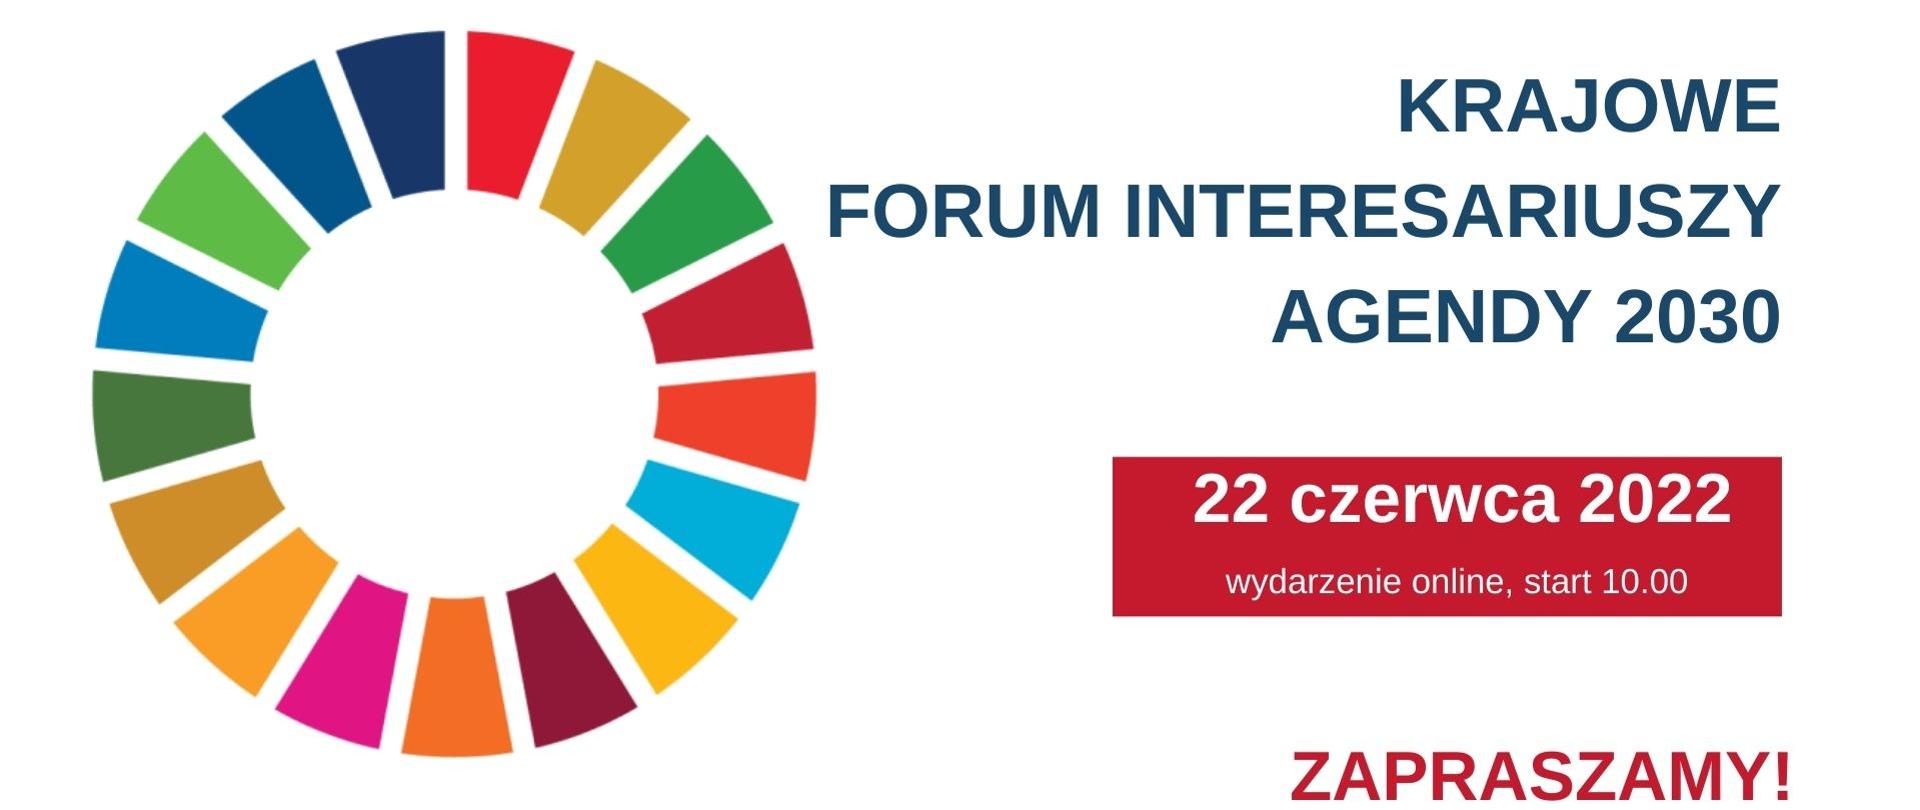 Krajowe Forum interesariuszy Agendy 2030 w formule konferencji online rozpocznie się o godzinie 10 w dniu 22 czerwca 2022. Zapraszamy.